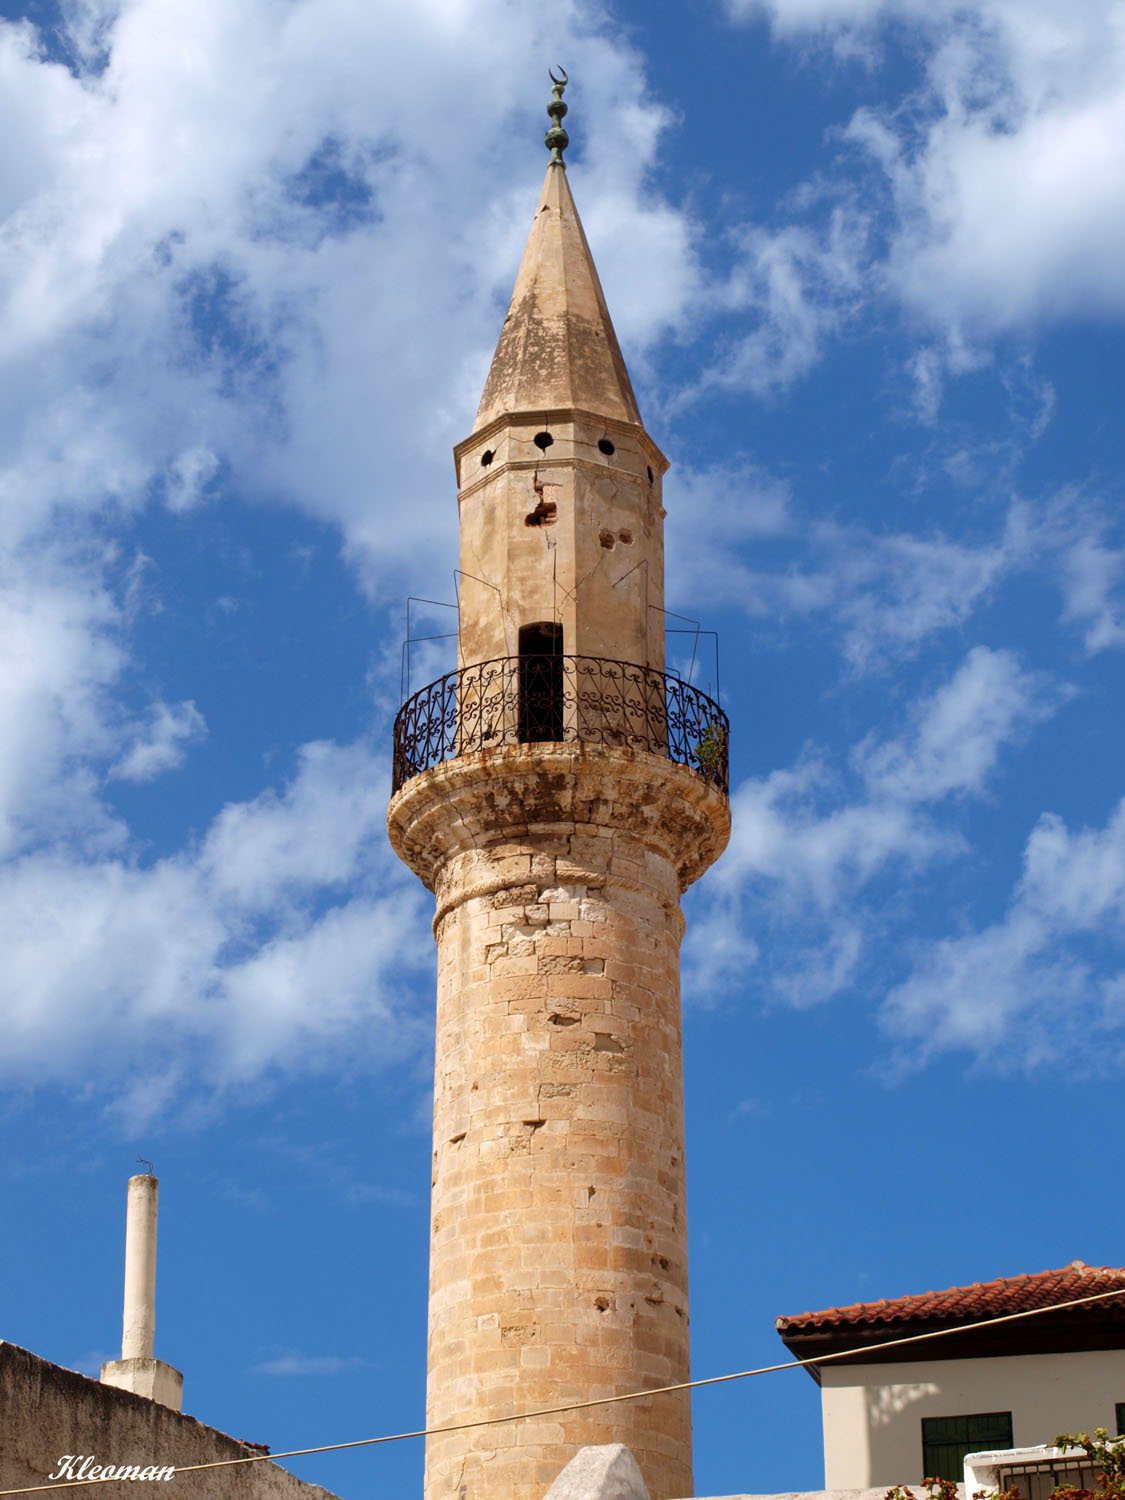 Minaret in chania